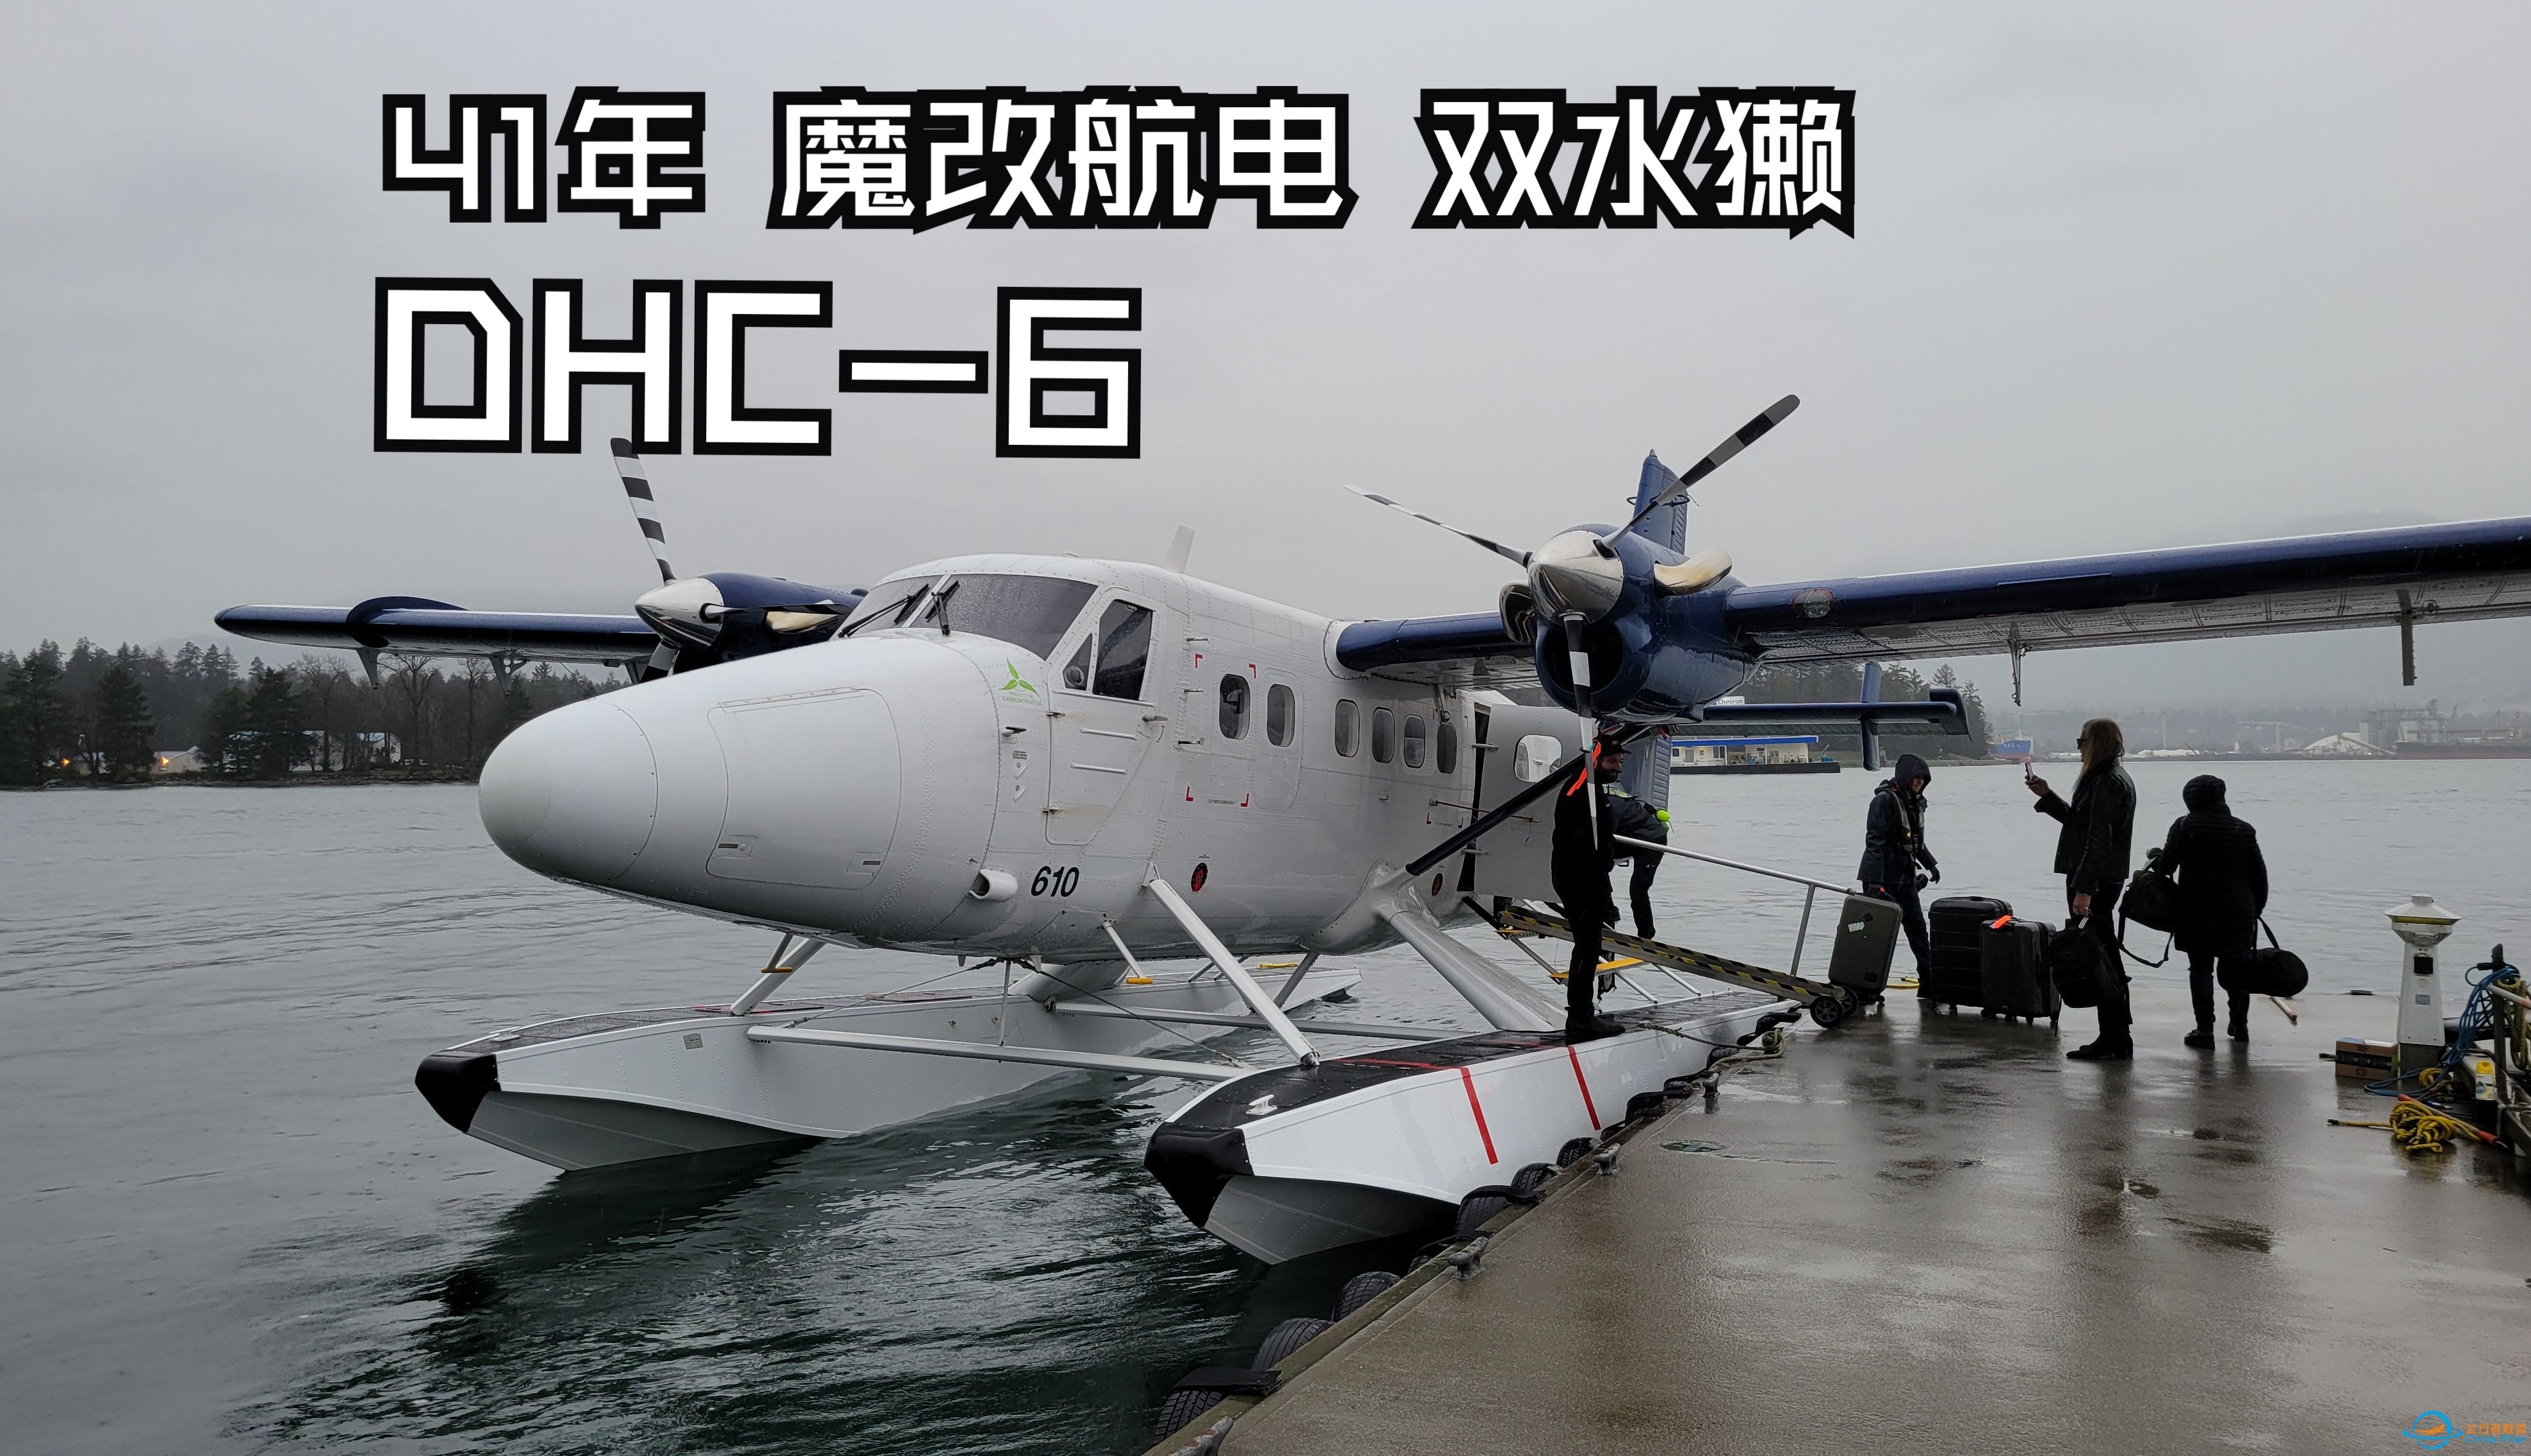 【飞行游记】41年的魔改老飞机？海港航空DHC-6双水獭水上飞机飞行体验-3810 